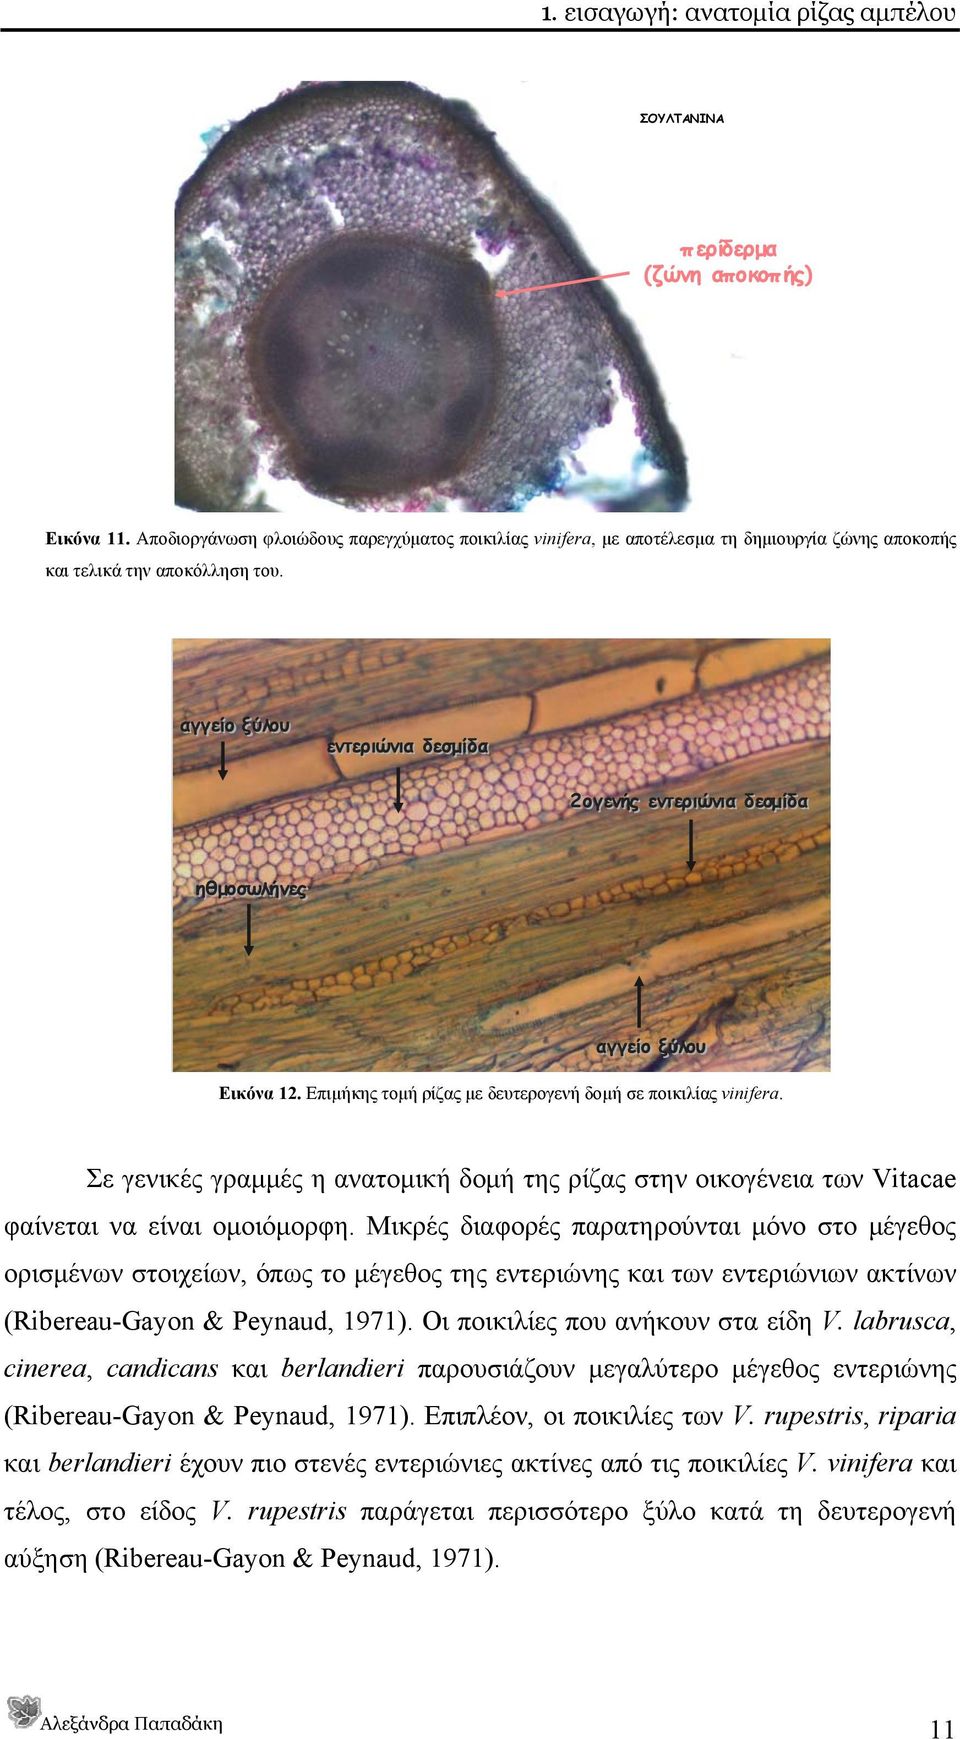 αγγείο ξύλου εντεριώνια δεσμίδα 2ογενής εντεριώνια δεσμίδα ηθμοσωλήνες αγγείο ξύλου Εικόνα 12. Επιμήκης τομή ρίζας με δευτερογενή δομή σε ποικιλίας vinifera.